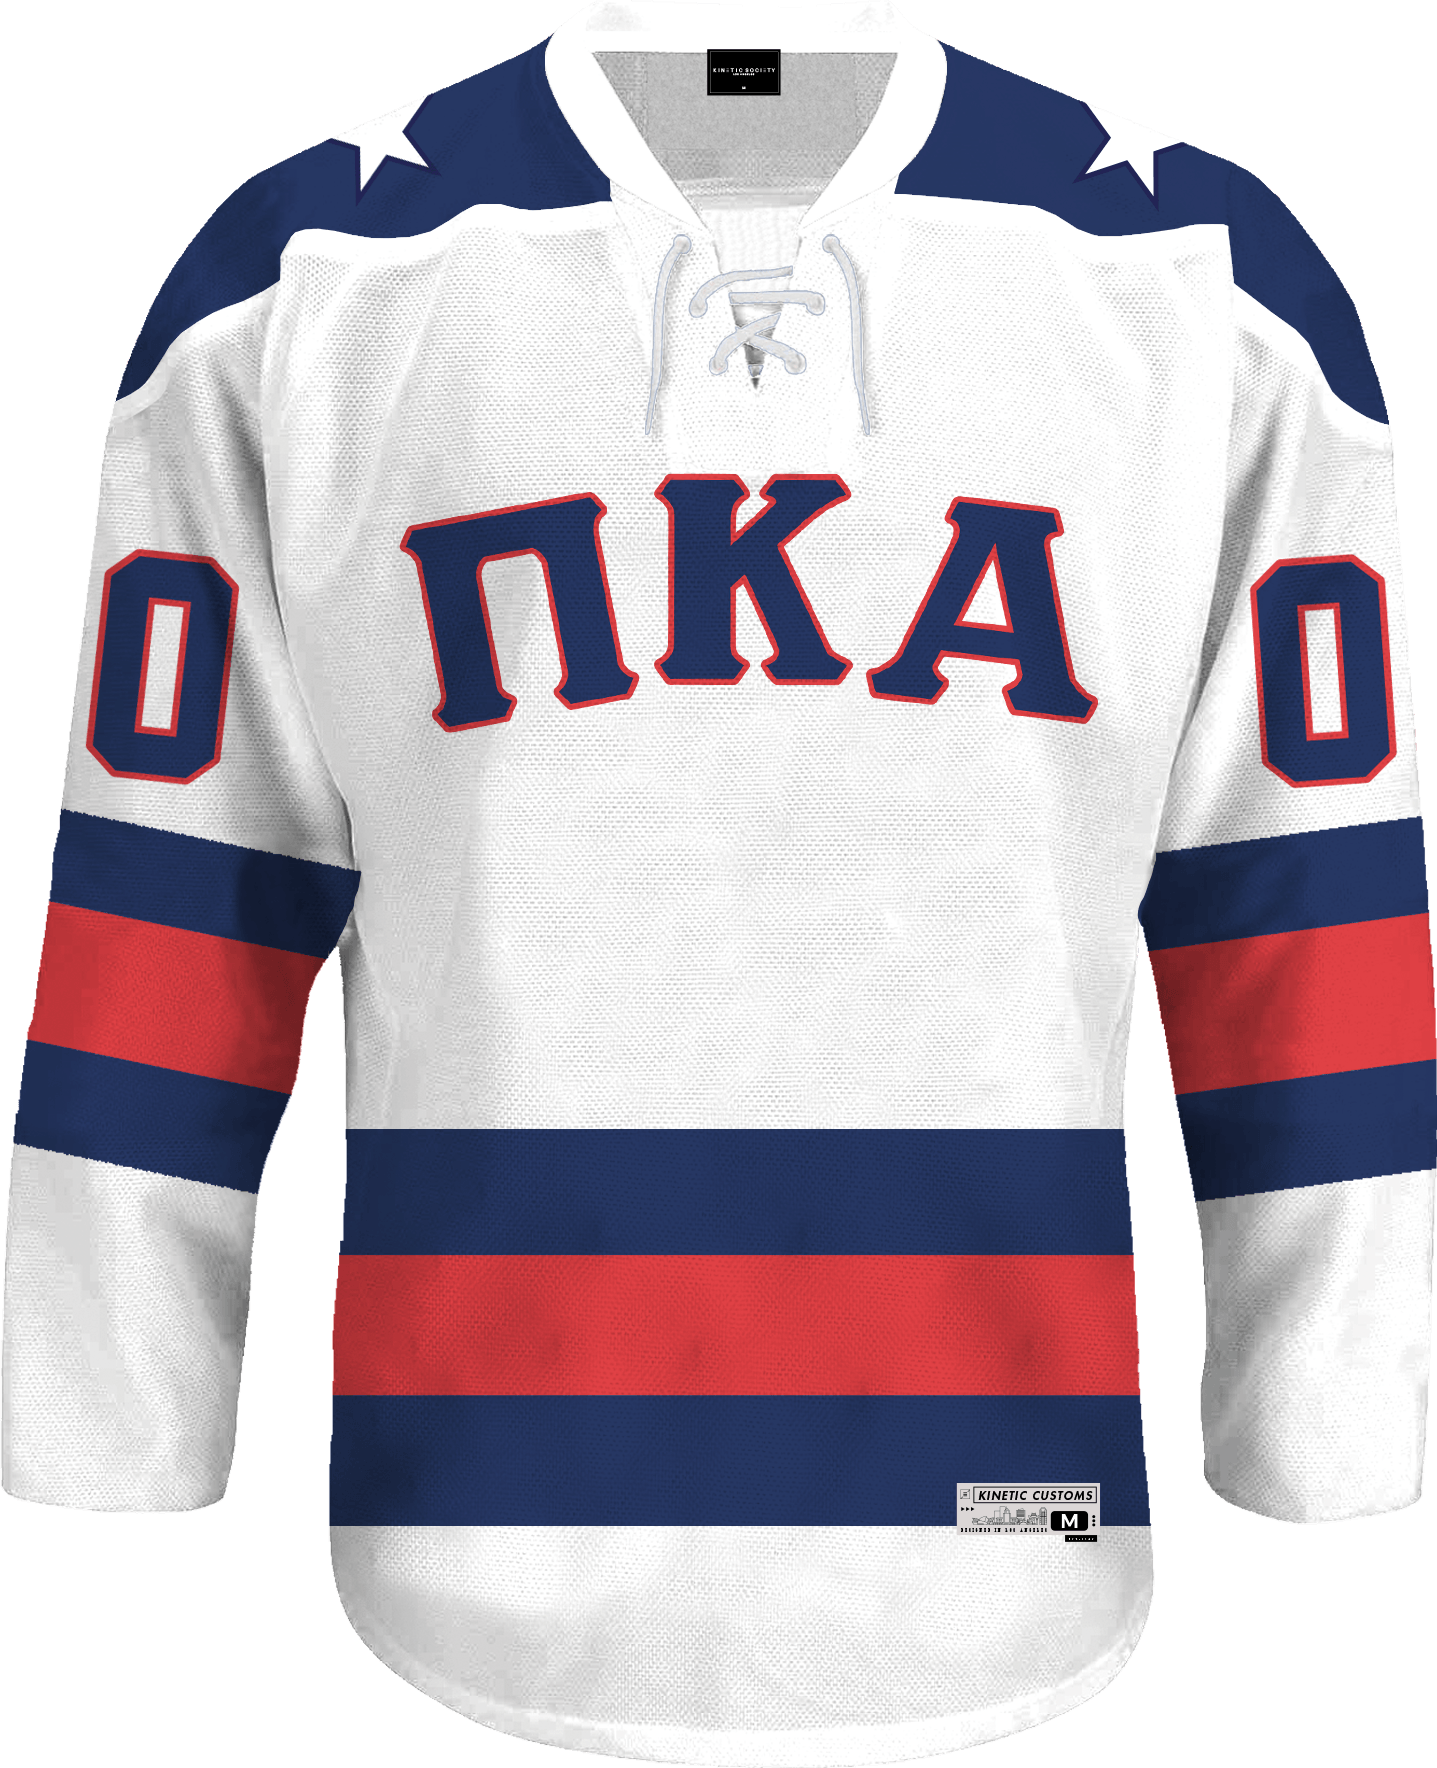 Pi Kappa Alpha - Astro Hockey Jersey - Kinetic Society